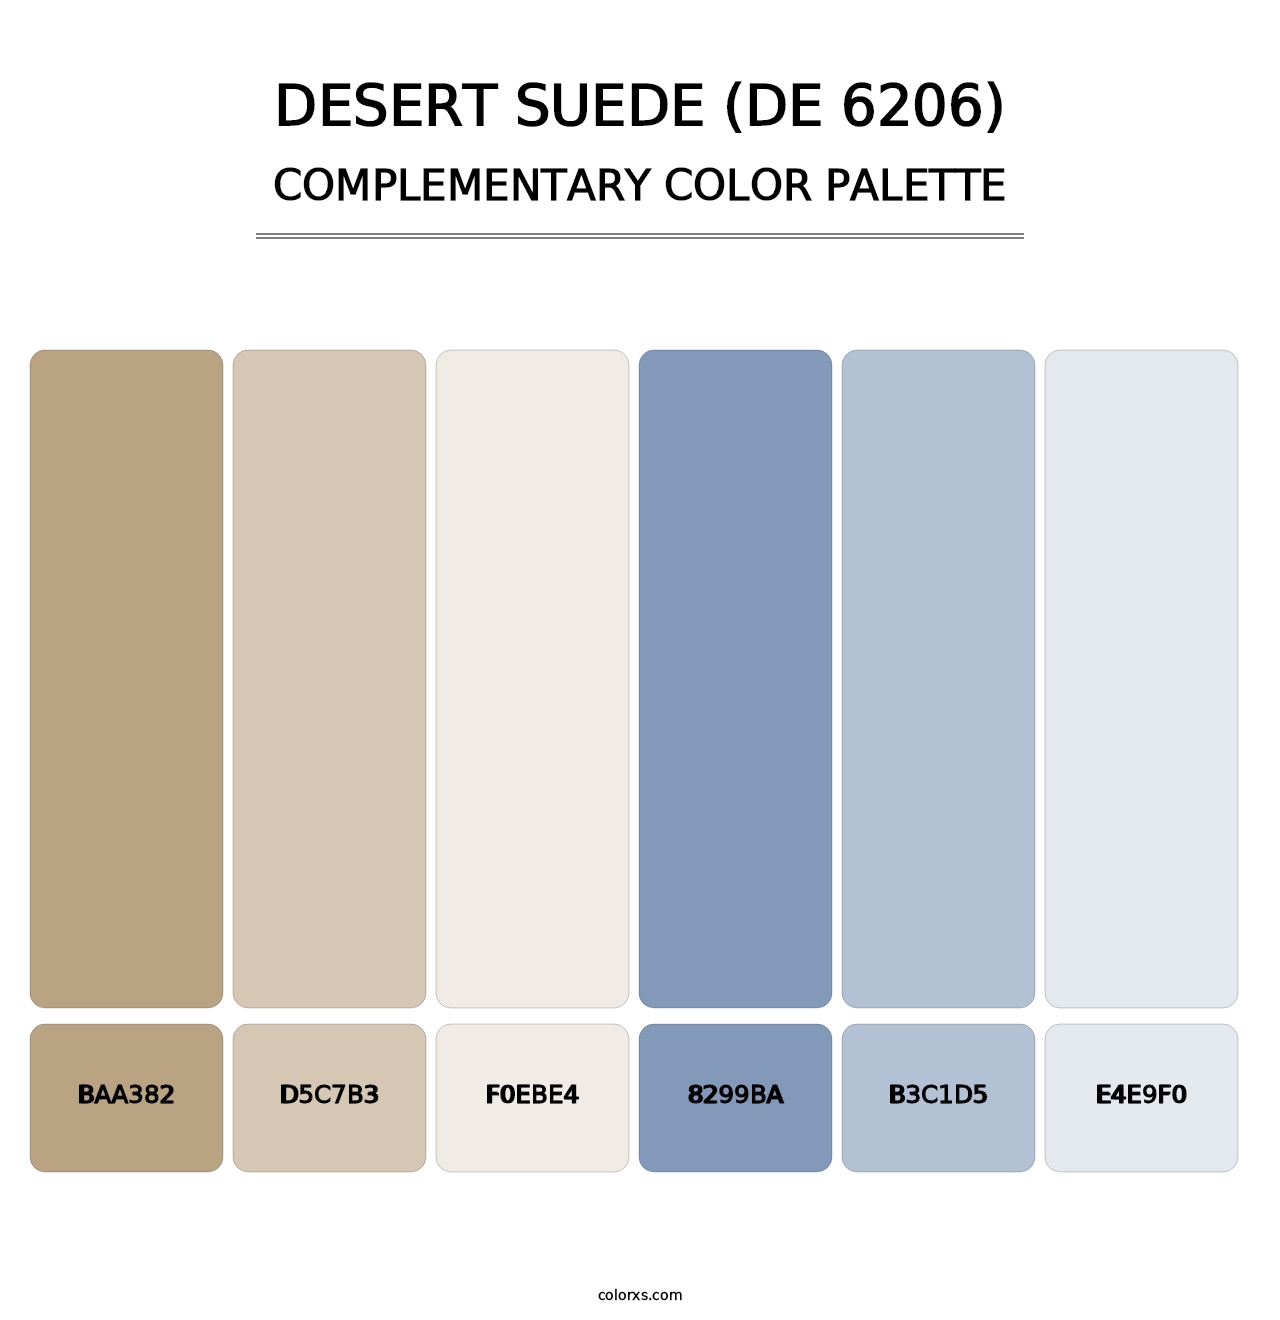 Desert Suede (DE 6206) - Complementary Color Palette